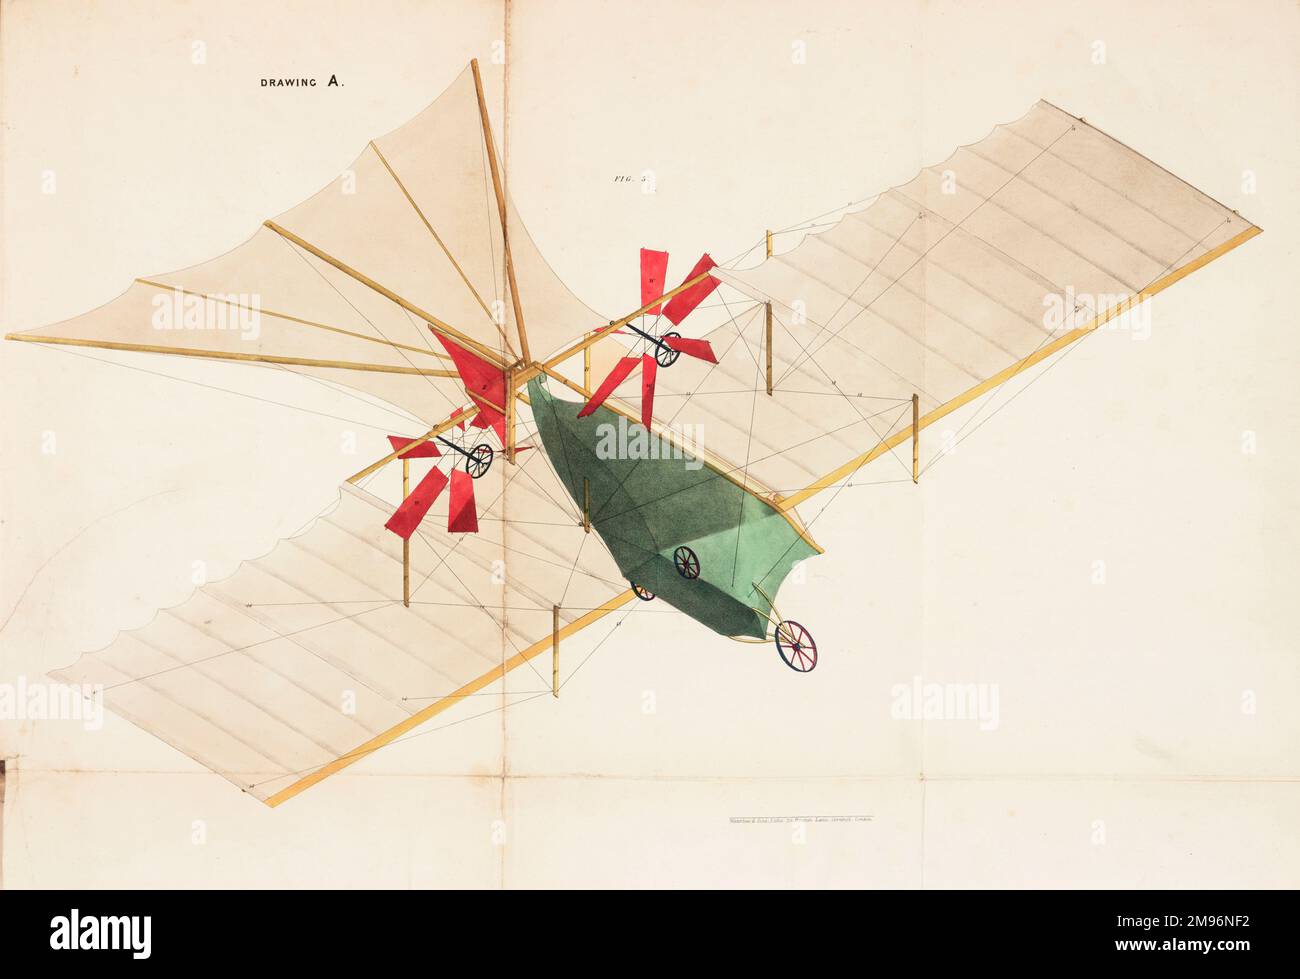 Der Luftdampfwagen -- Unteransicht mit bedecktem Stoff. Diese Flugmaschine wurde 1842 von William Samuel Henson (1812-1888) und John Stringfellow (1799-1883) patentiert. Stockfoto